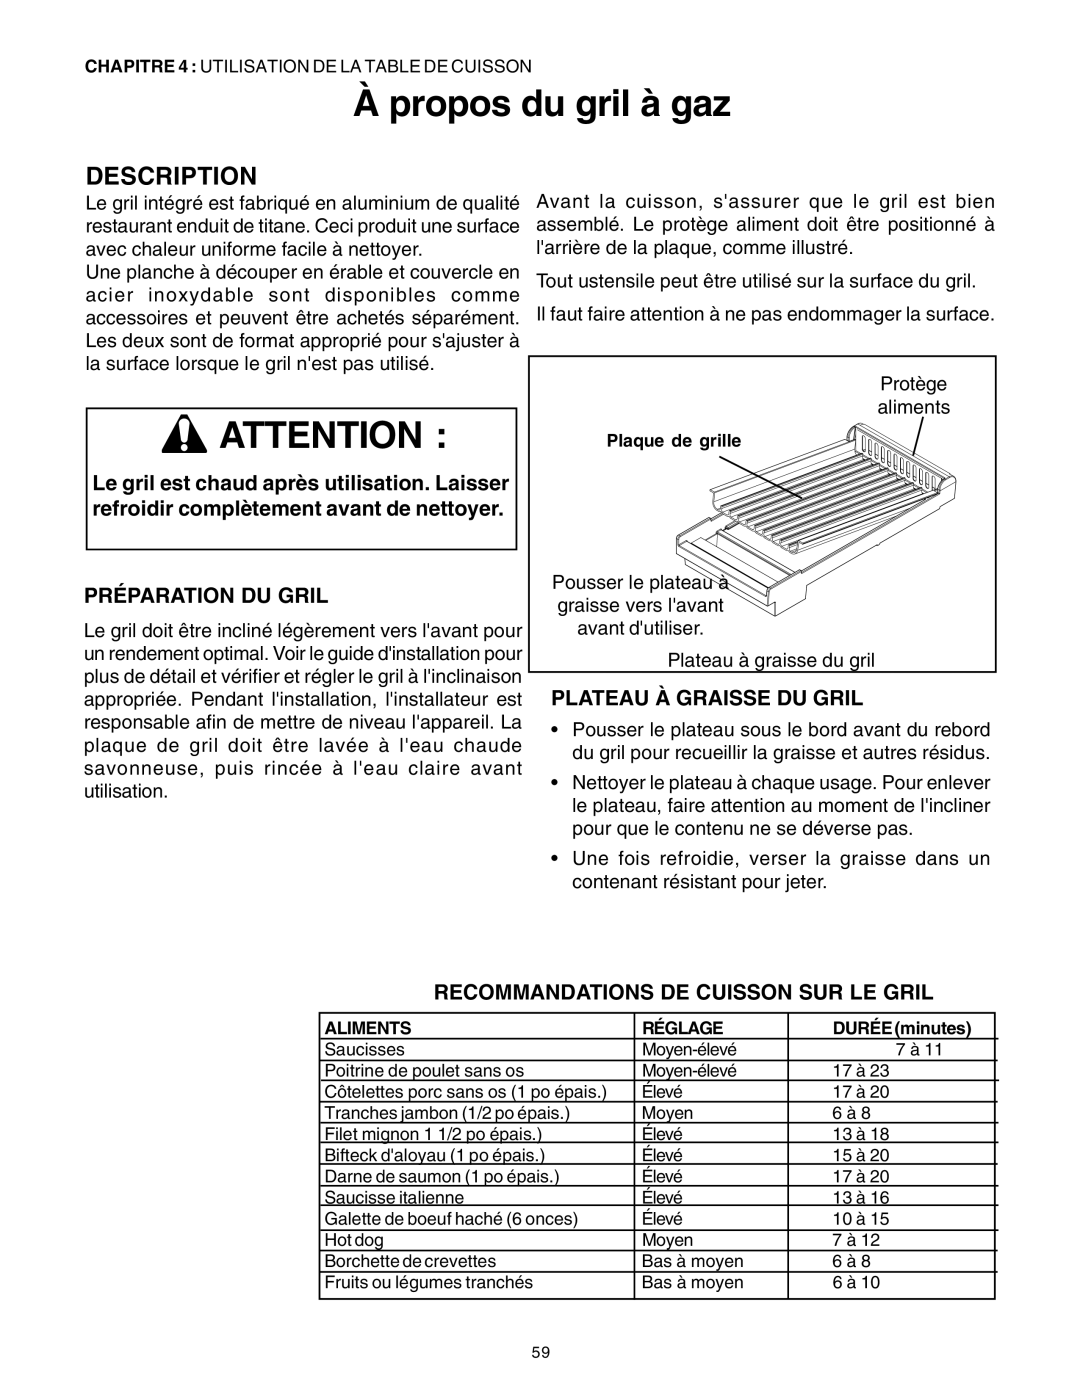 Thermador DP30 manual À propos du gril à gaz, Préparation Du Gril, Plateau À Graisse Du Gril, Description 